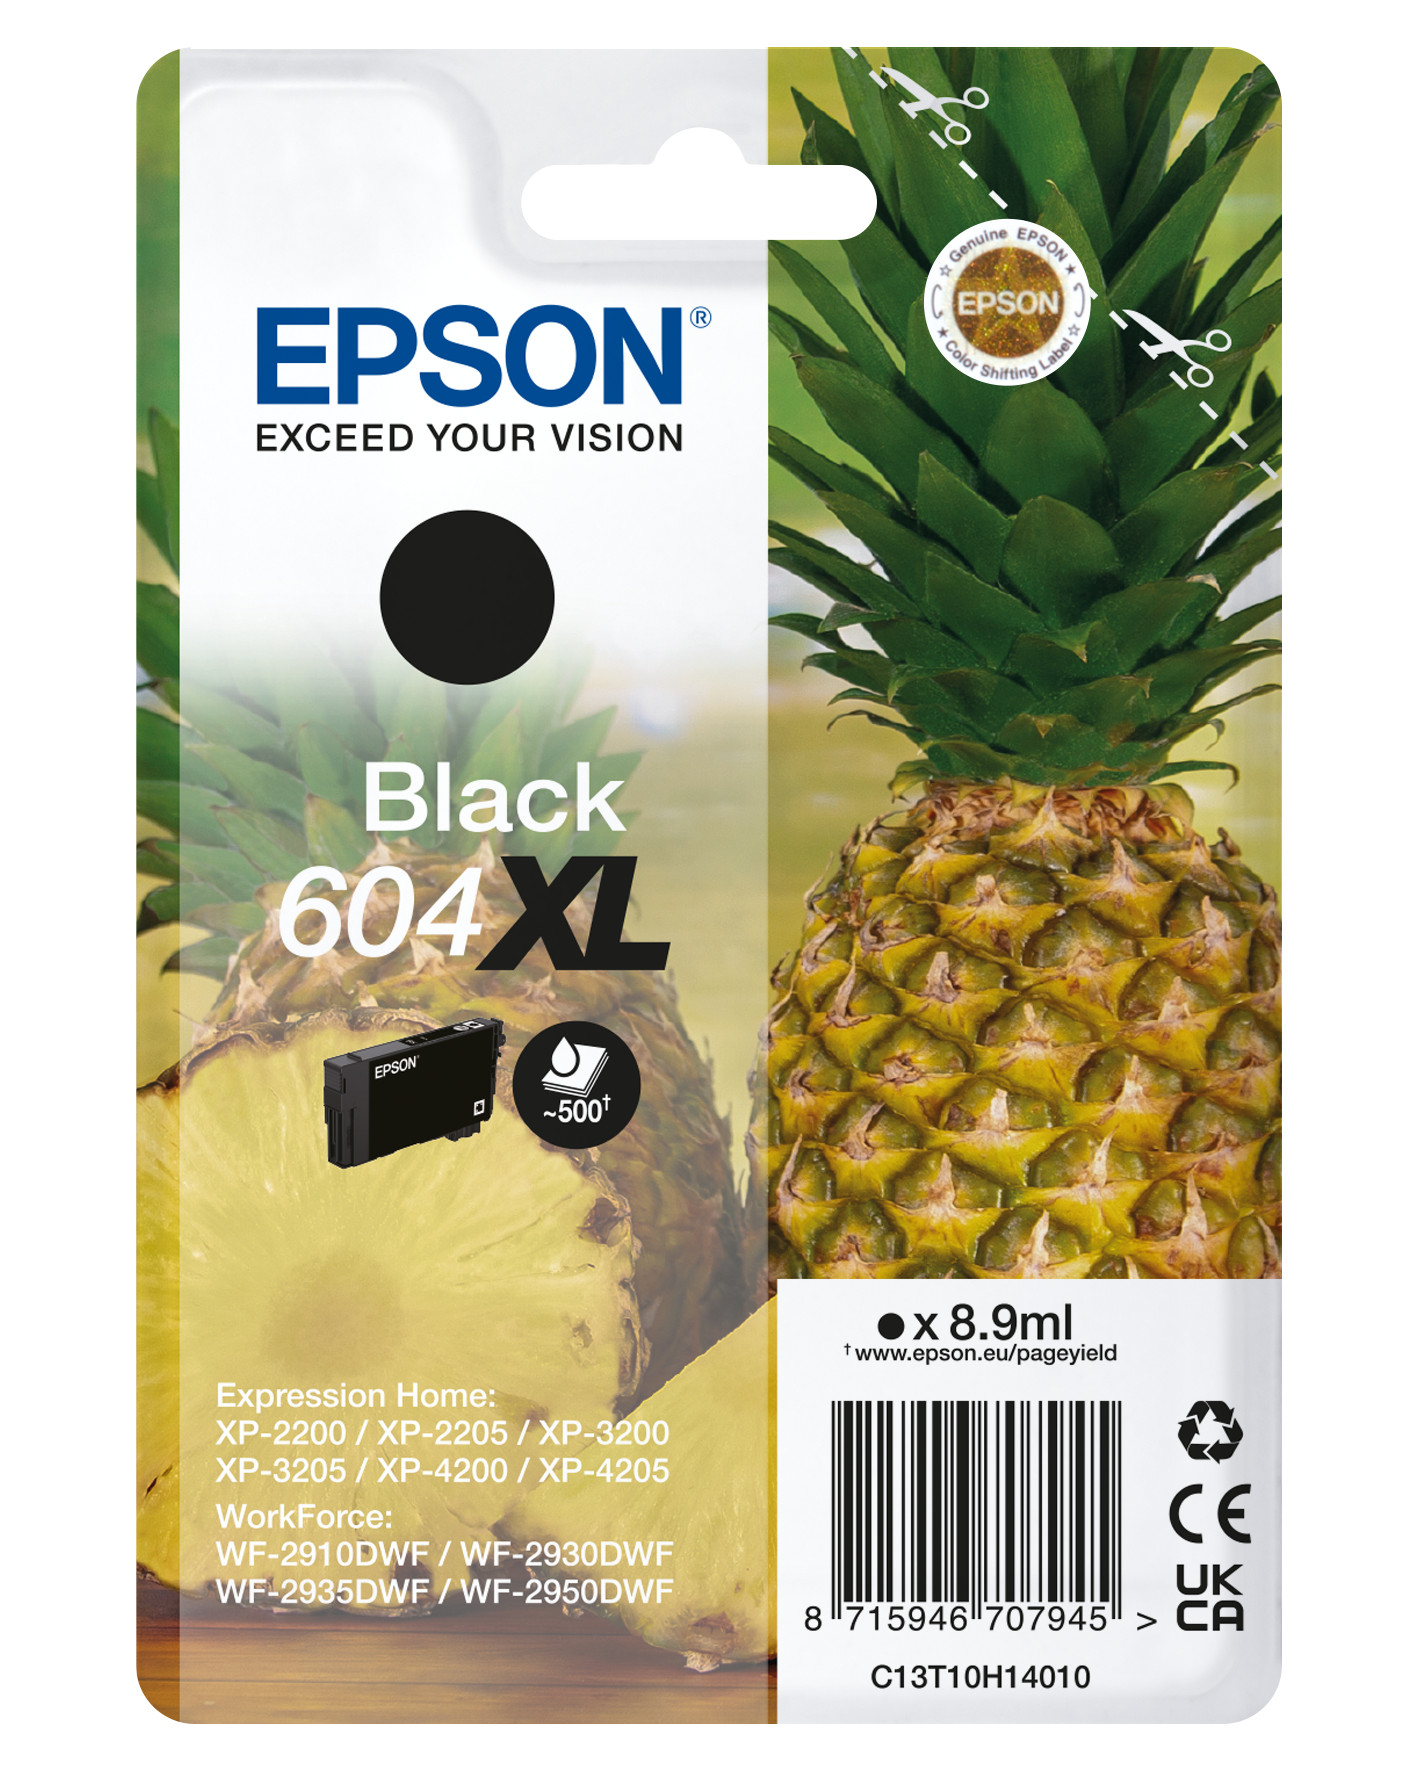 EPSON Expression XP-2200 - Comprar Impresora y Escáner WiFi